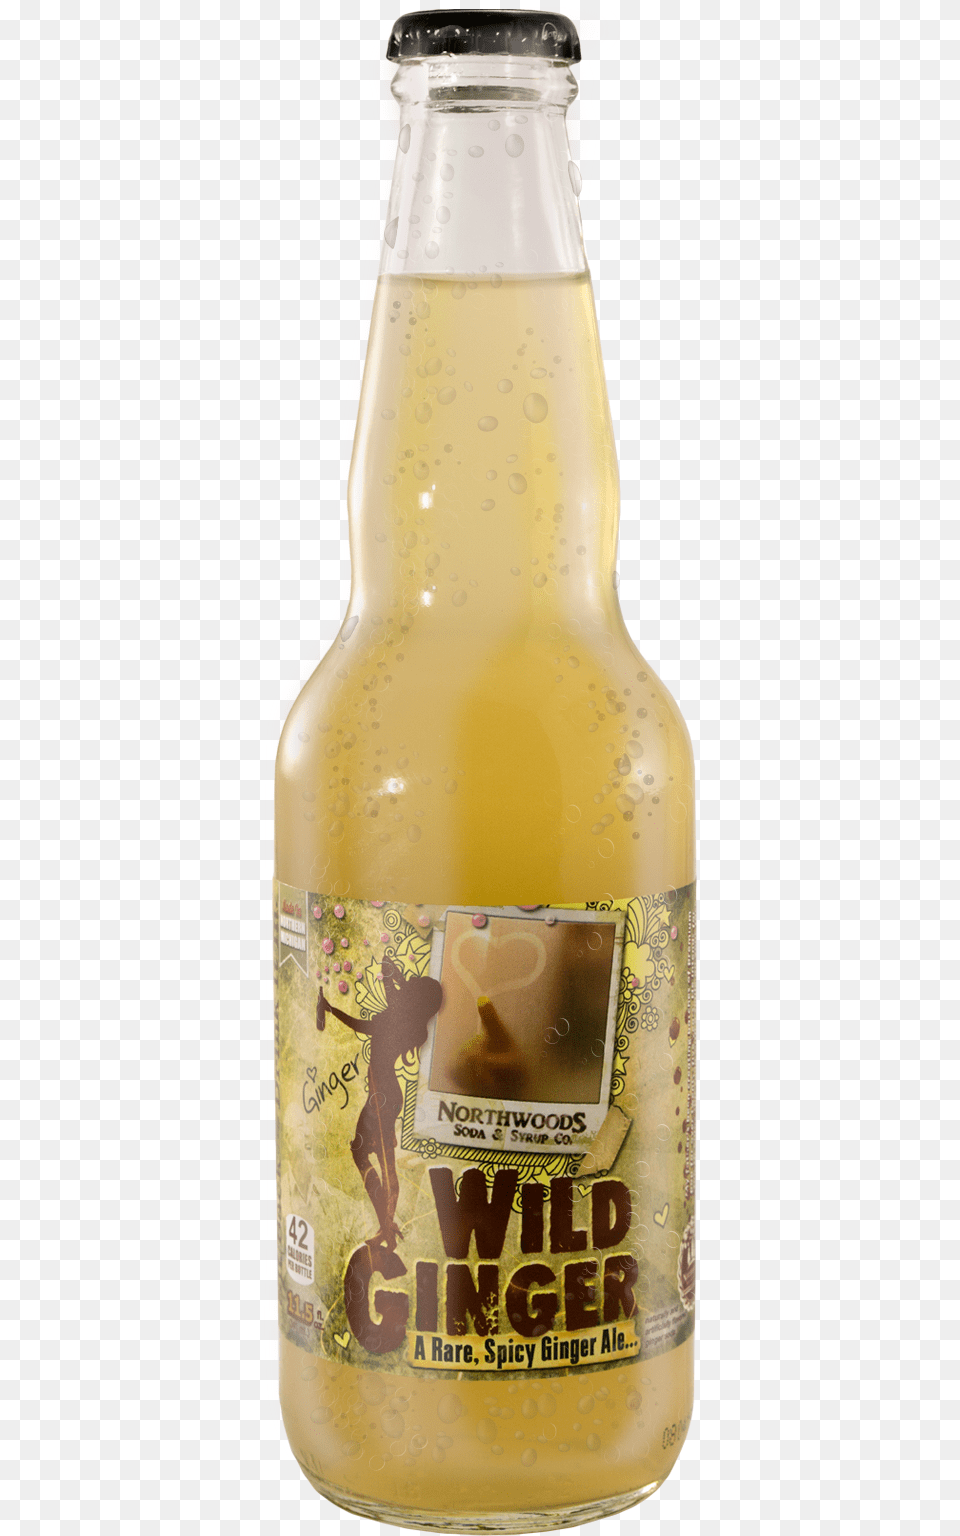 Wild Ginger Ale, Bottle, Alcohol, Beer, Beer Bottle Png